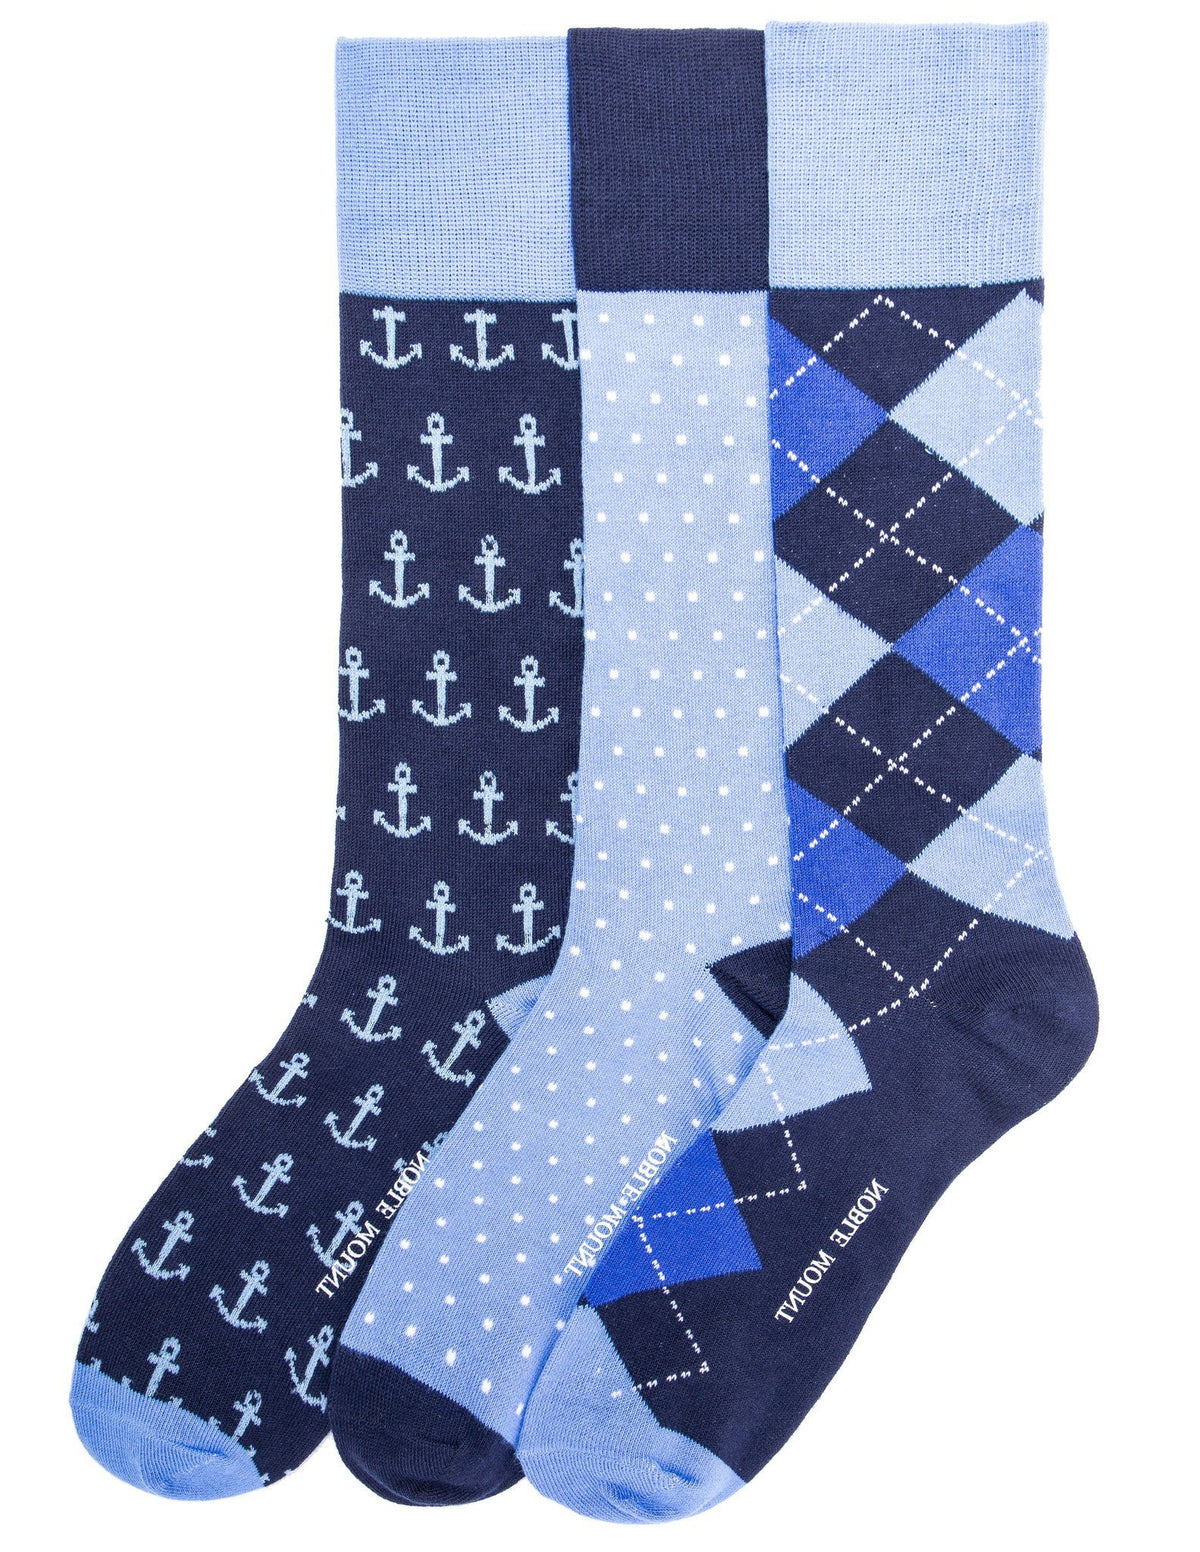 Men's Combed Cotton Dress Socks 3-Pack - Set C8